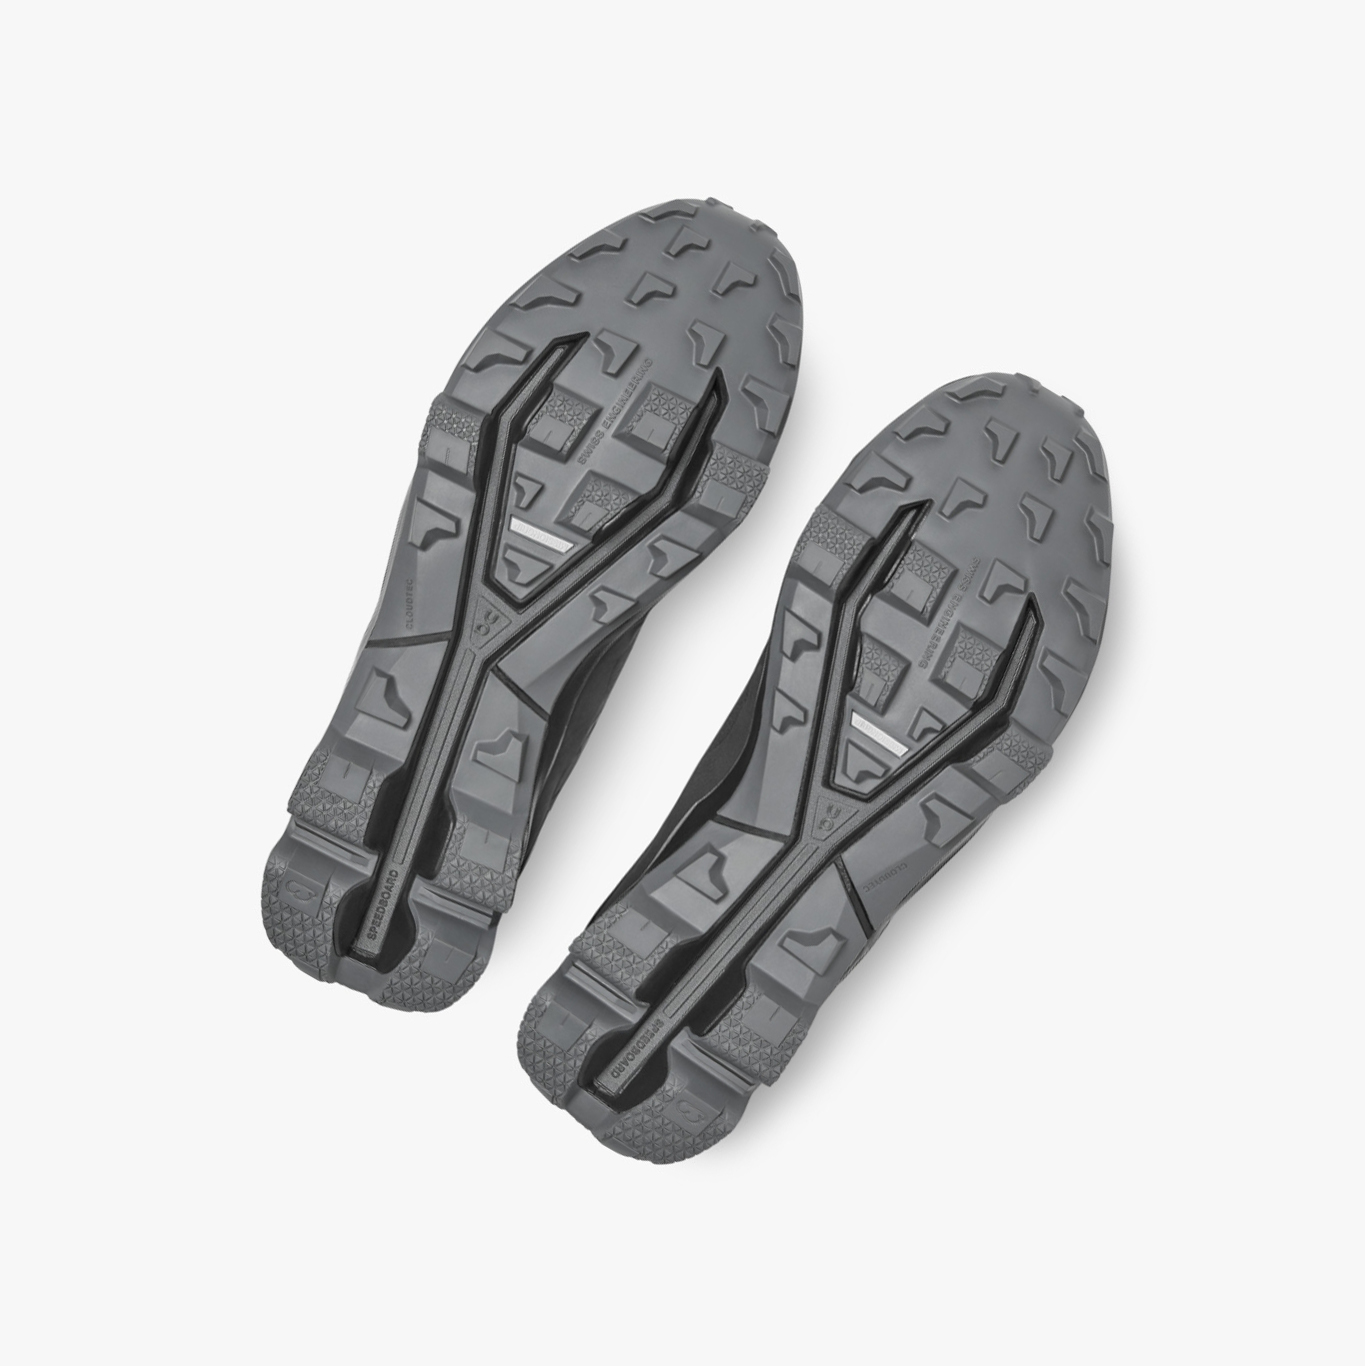 Black QC Cloudventure Peak Men's Trail Running Shoes | 0000039CA